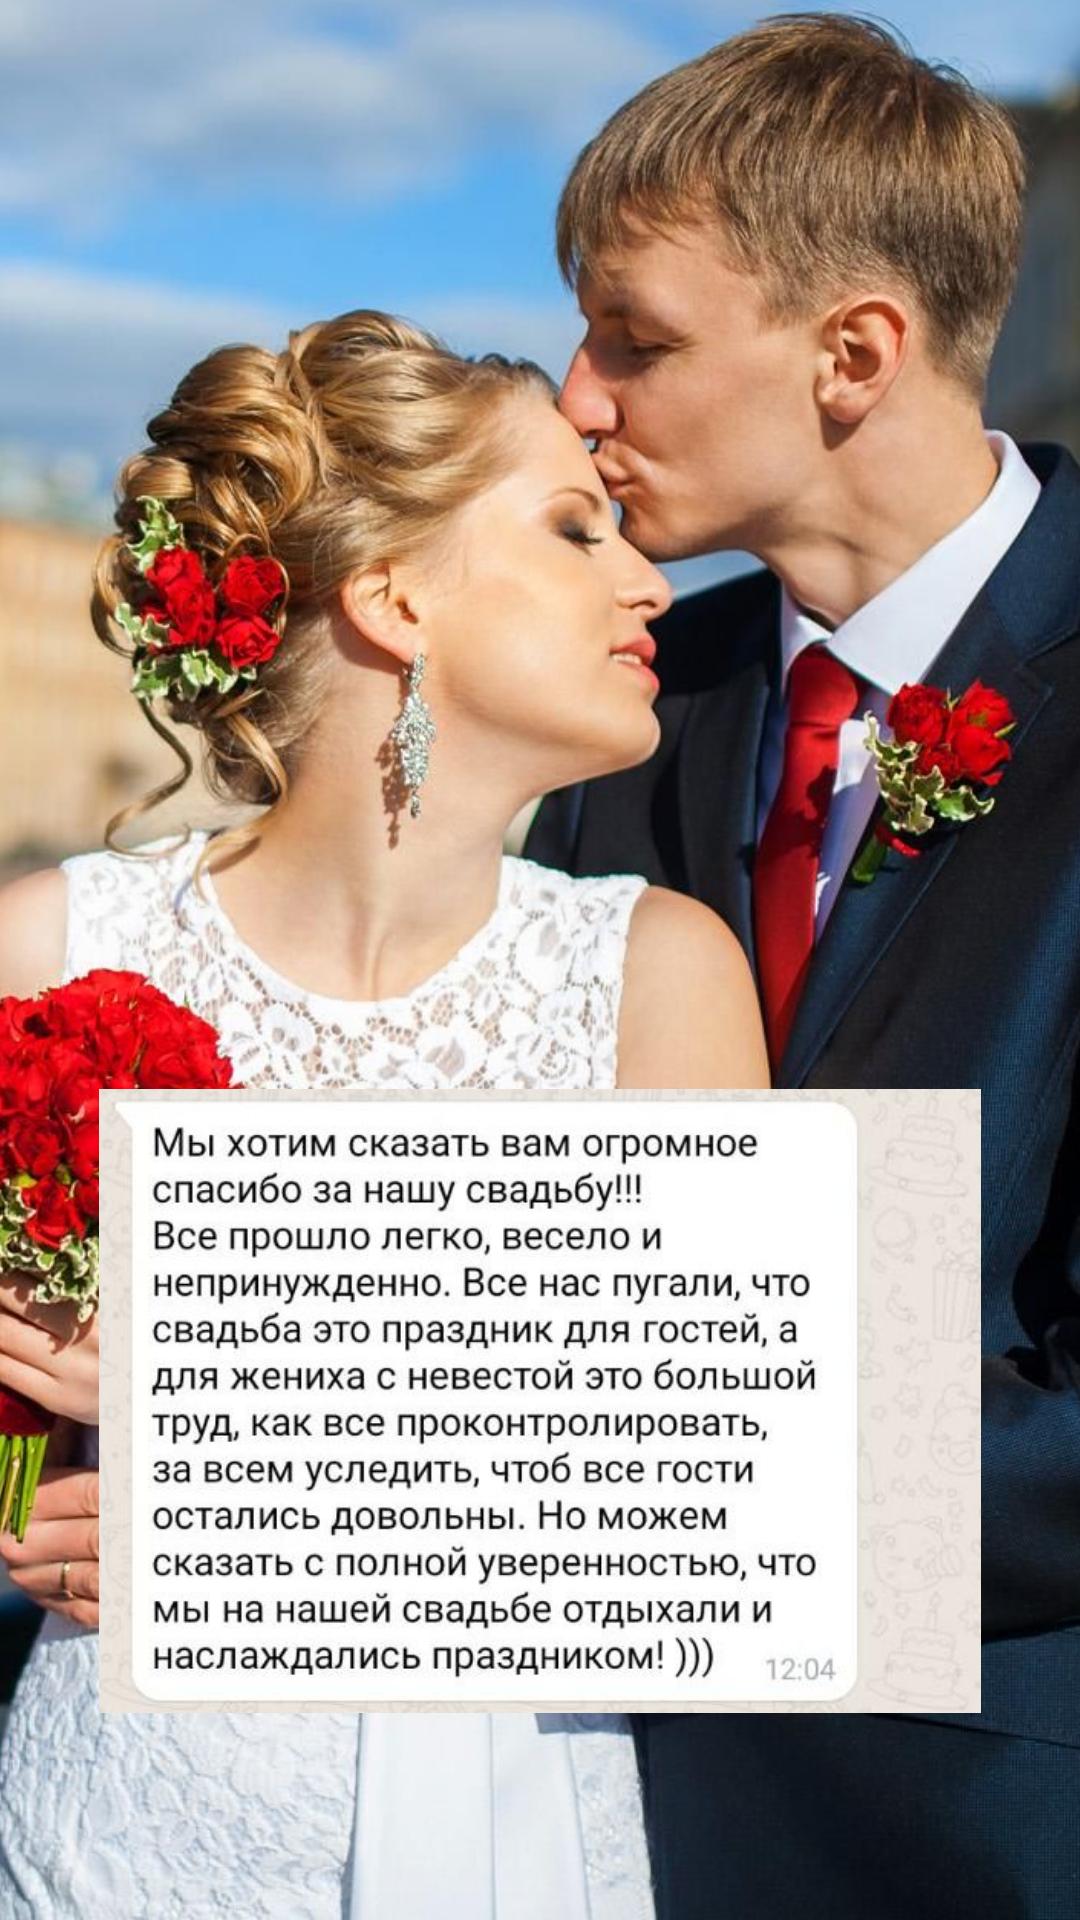 Организация свадьбы в Подольске
от компании Pandaevent